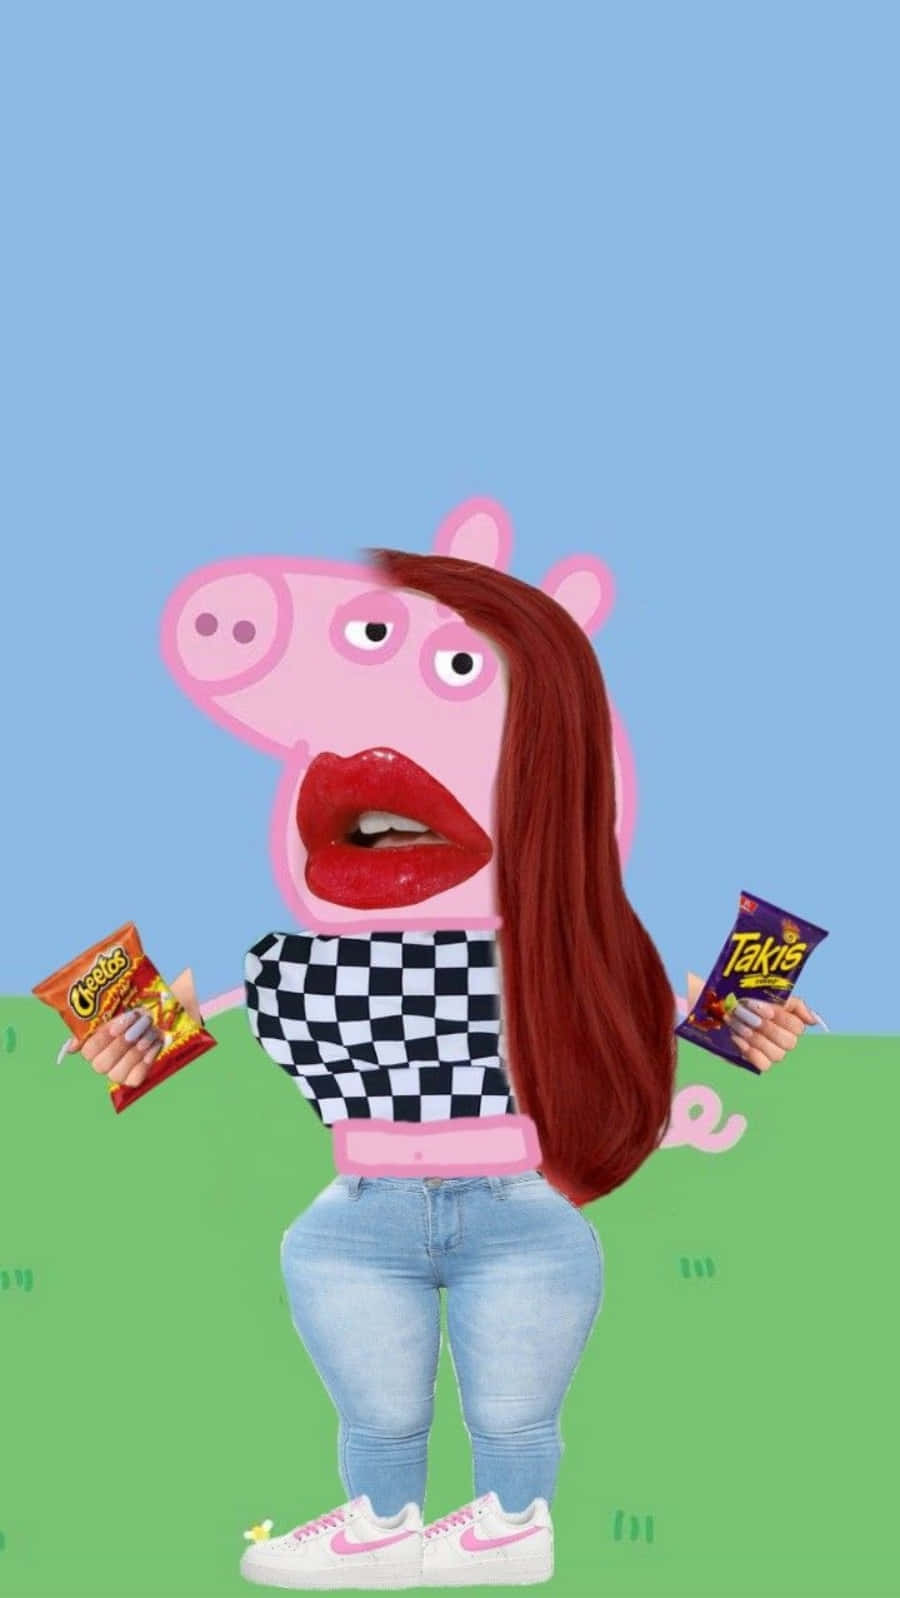 Lustigesbild Von Peppa Pig Mit Langen Haaren.